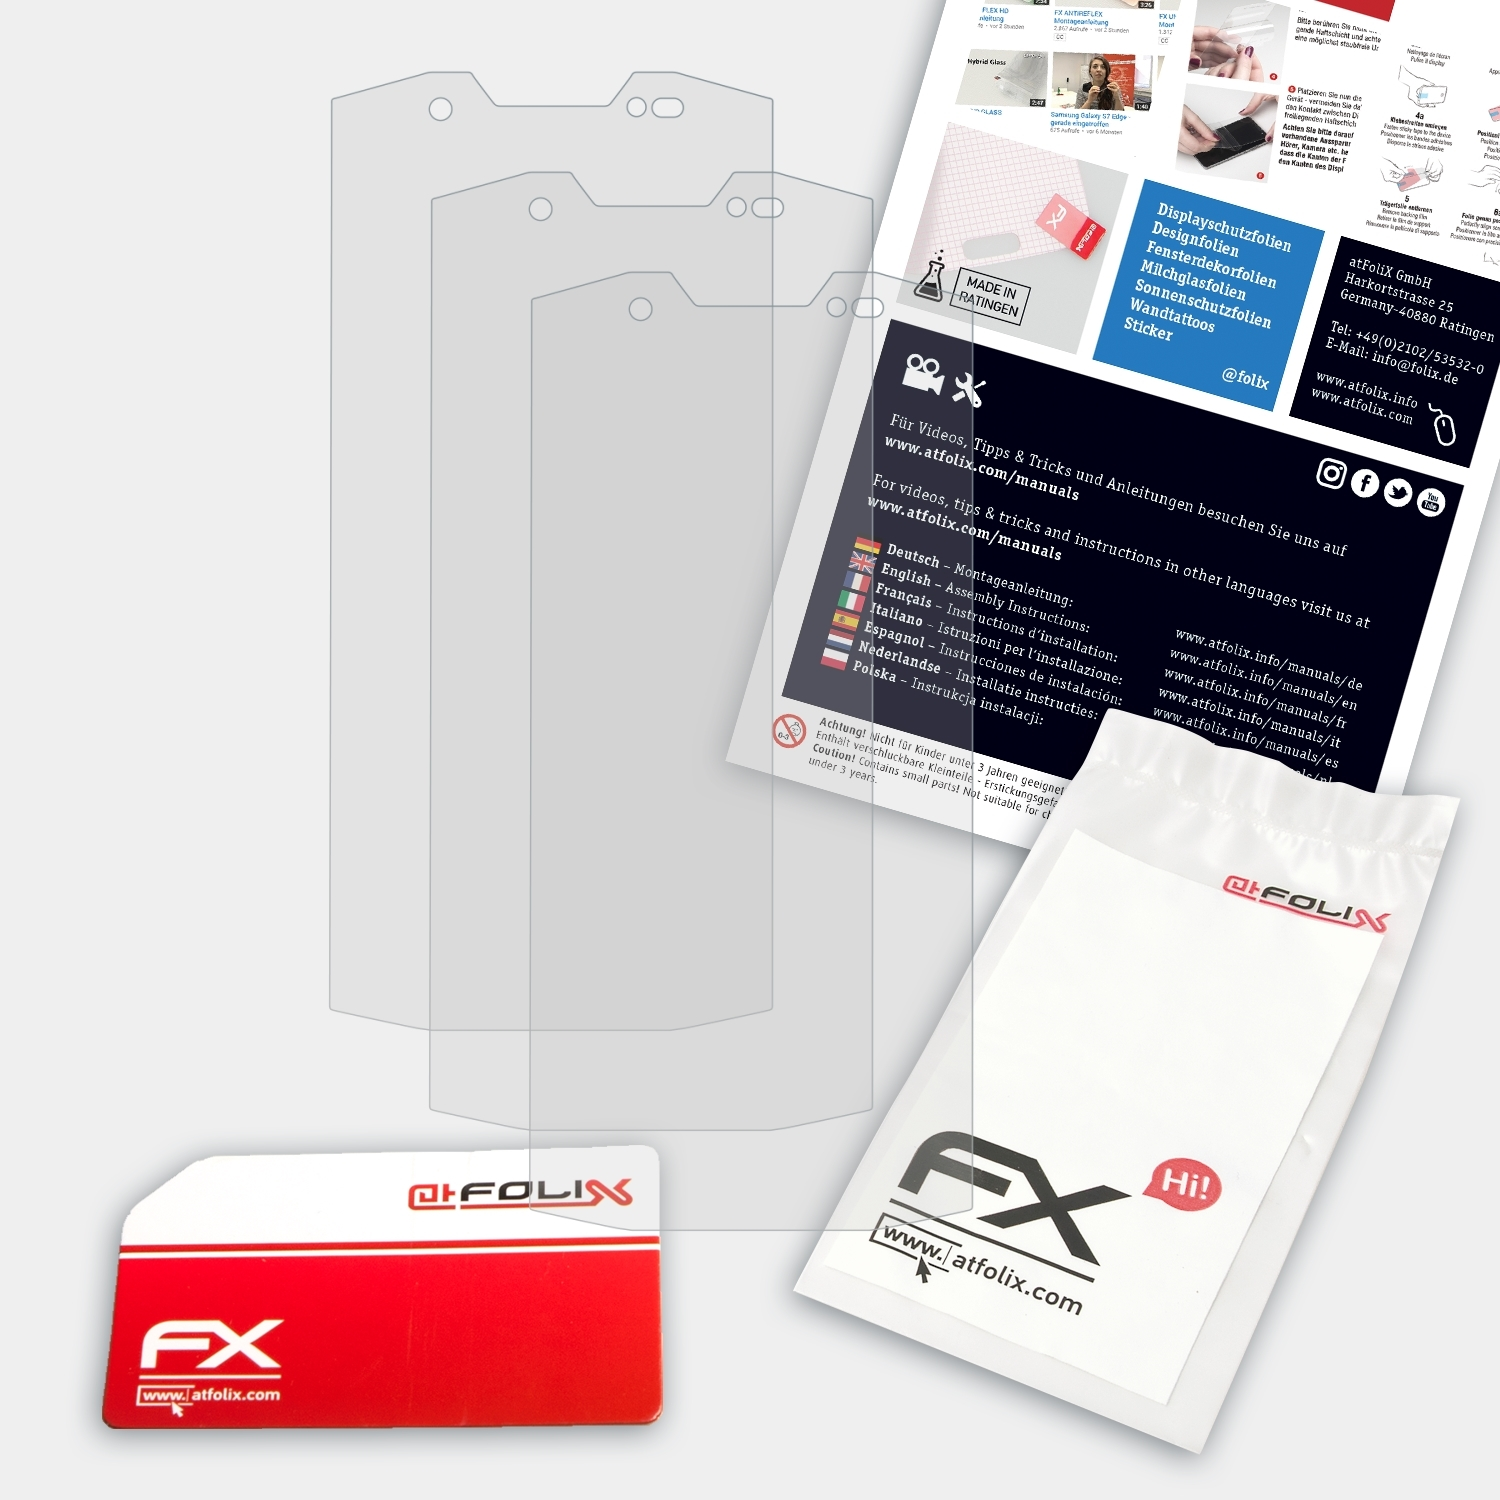 Lite) FX-Antireflex Displayschutz(für S80 ATFOLIX 3x Doogee